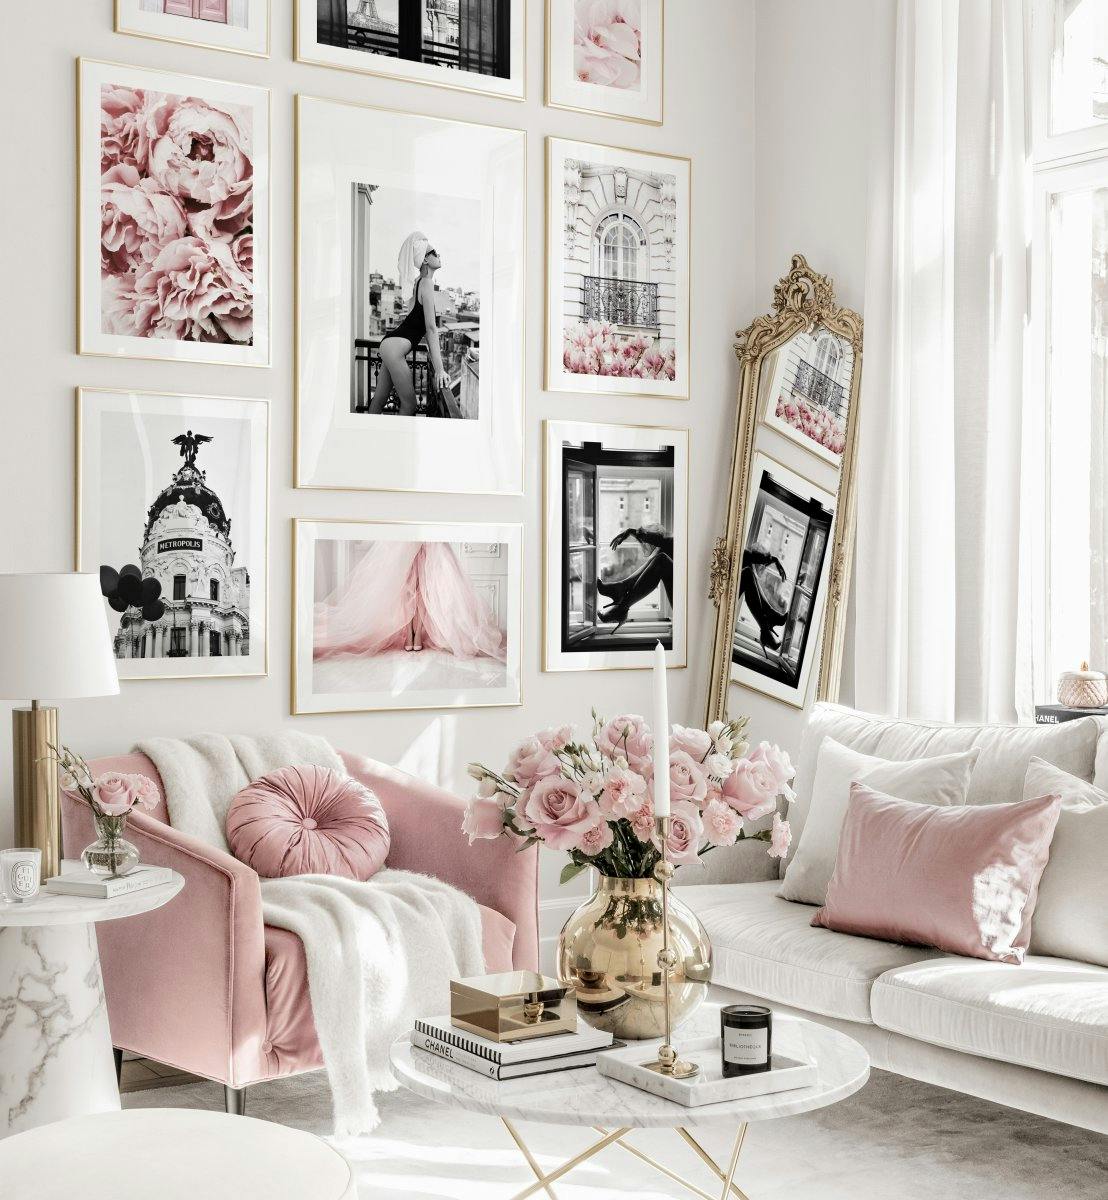 Trendi pink kép fal divat poszterek virág képek arany képkeretek